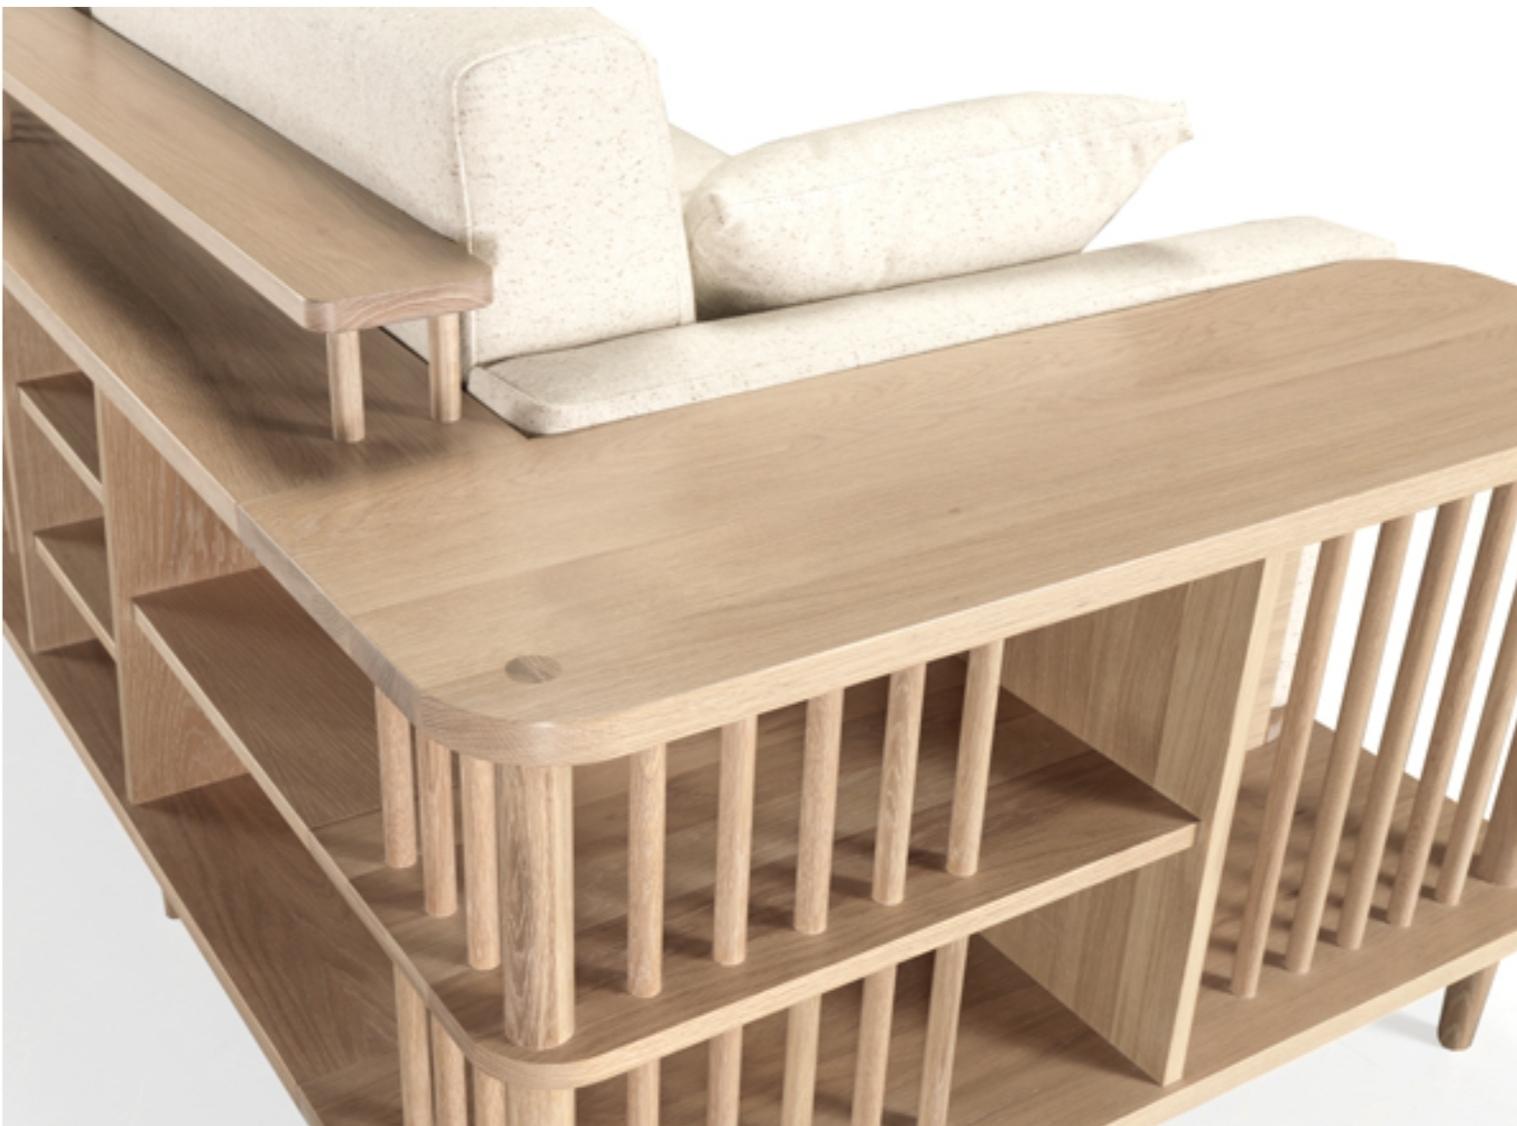 Ein atemberaubend schönes, bequemes Sofa mit umlaufendem Holzrahmen aus Massivholz. Ein Sofa, ein Bücherregal und auch ein Raumteiler, perfekt für einen exklusiven Raum.
Die Kissen lassen sich leicht abnehmen.
Verpackt in einer Sperrholzkiste. Sie